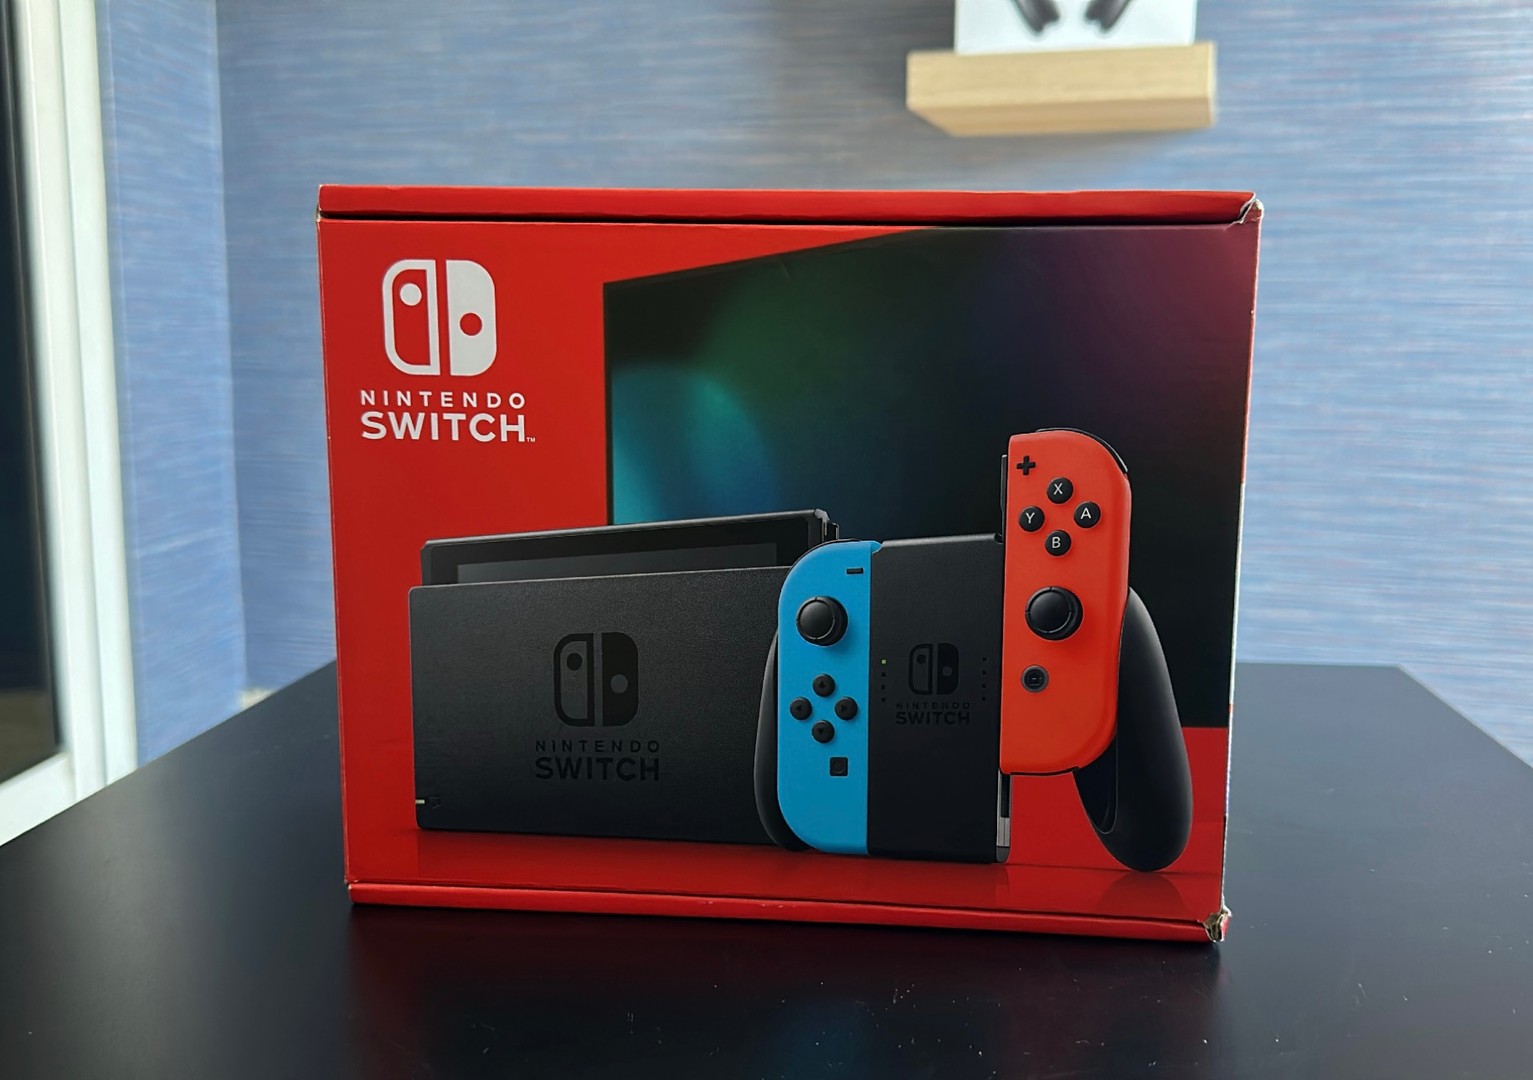 Vendo Consola Nintendo Switch Version Mejorada Nuevos Sellados, RD$ 16,500 NEG 0